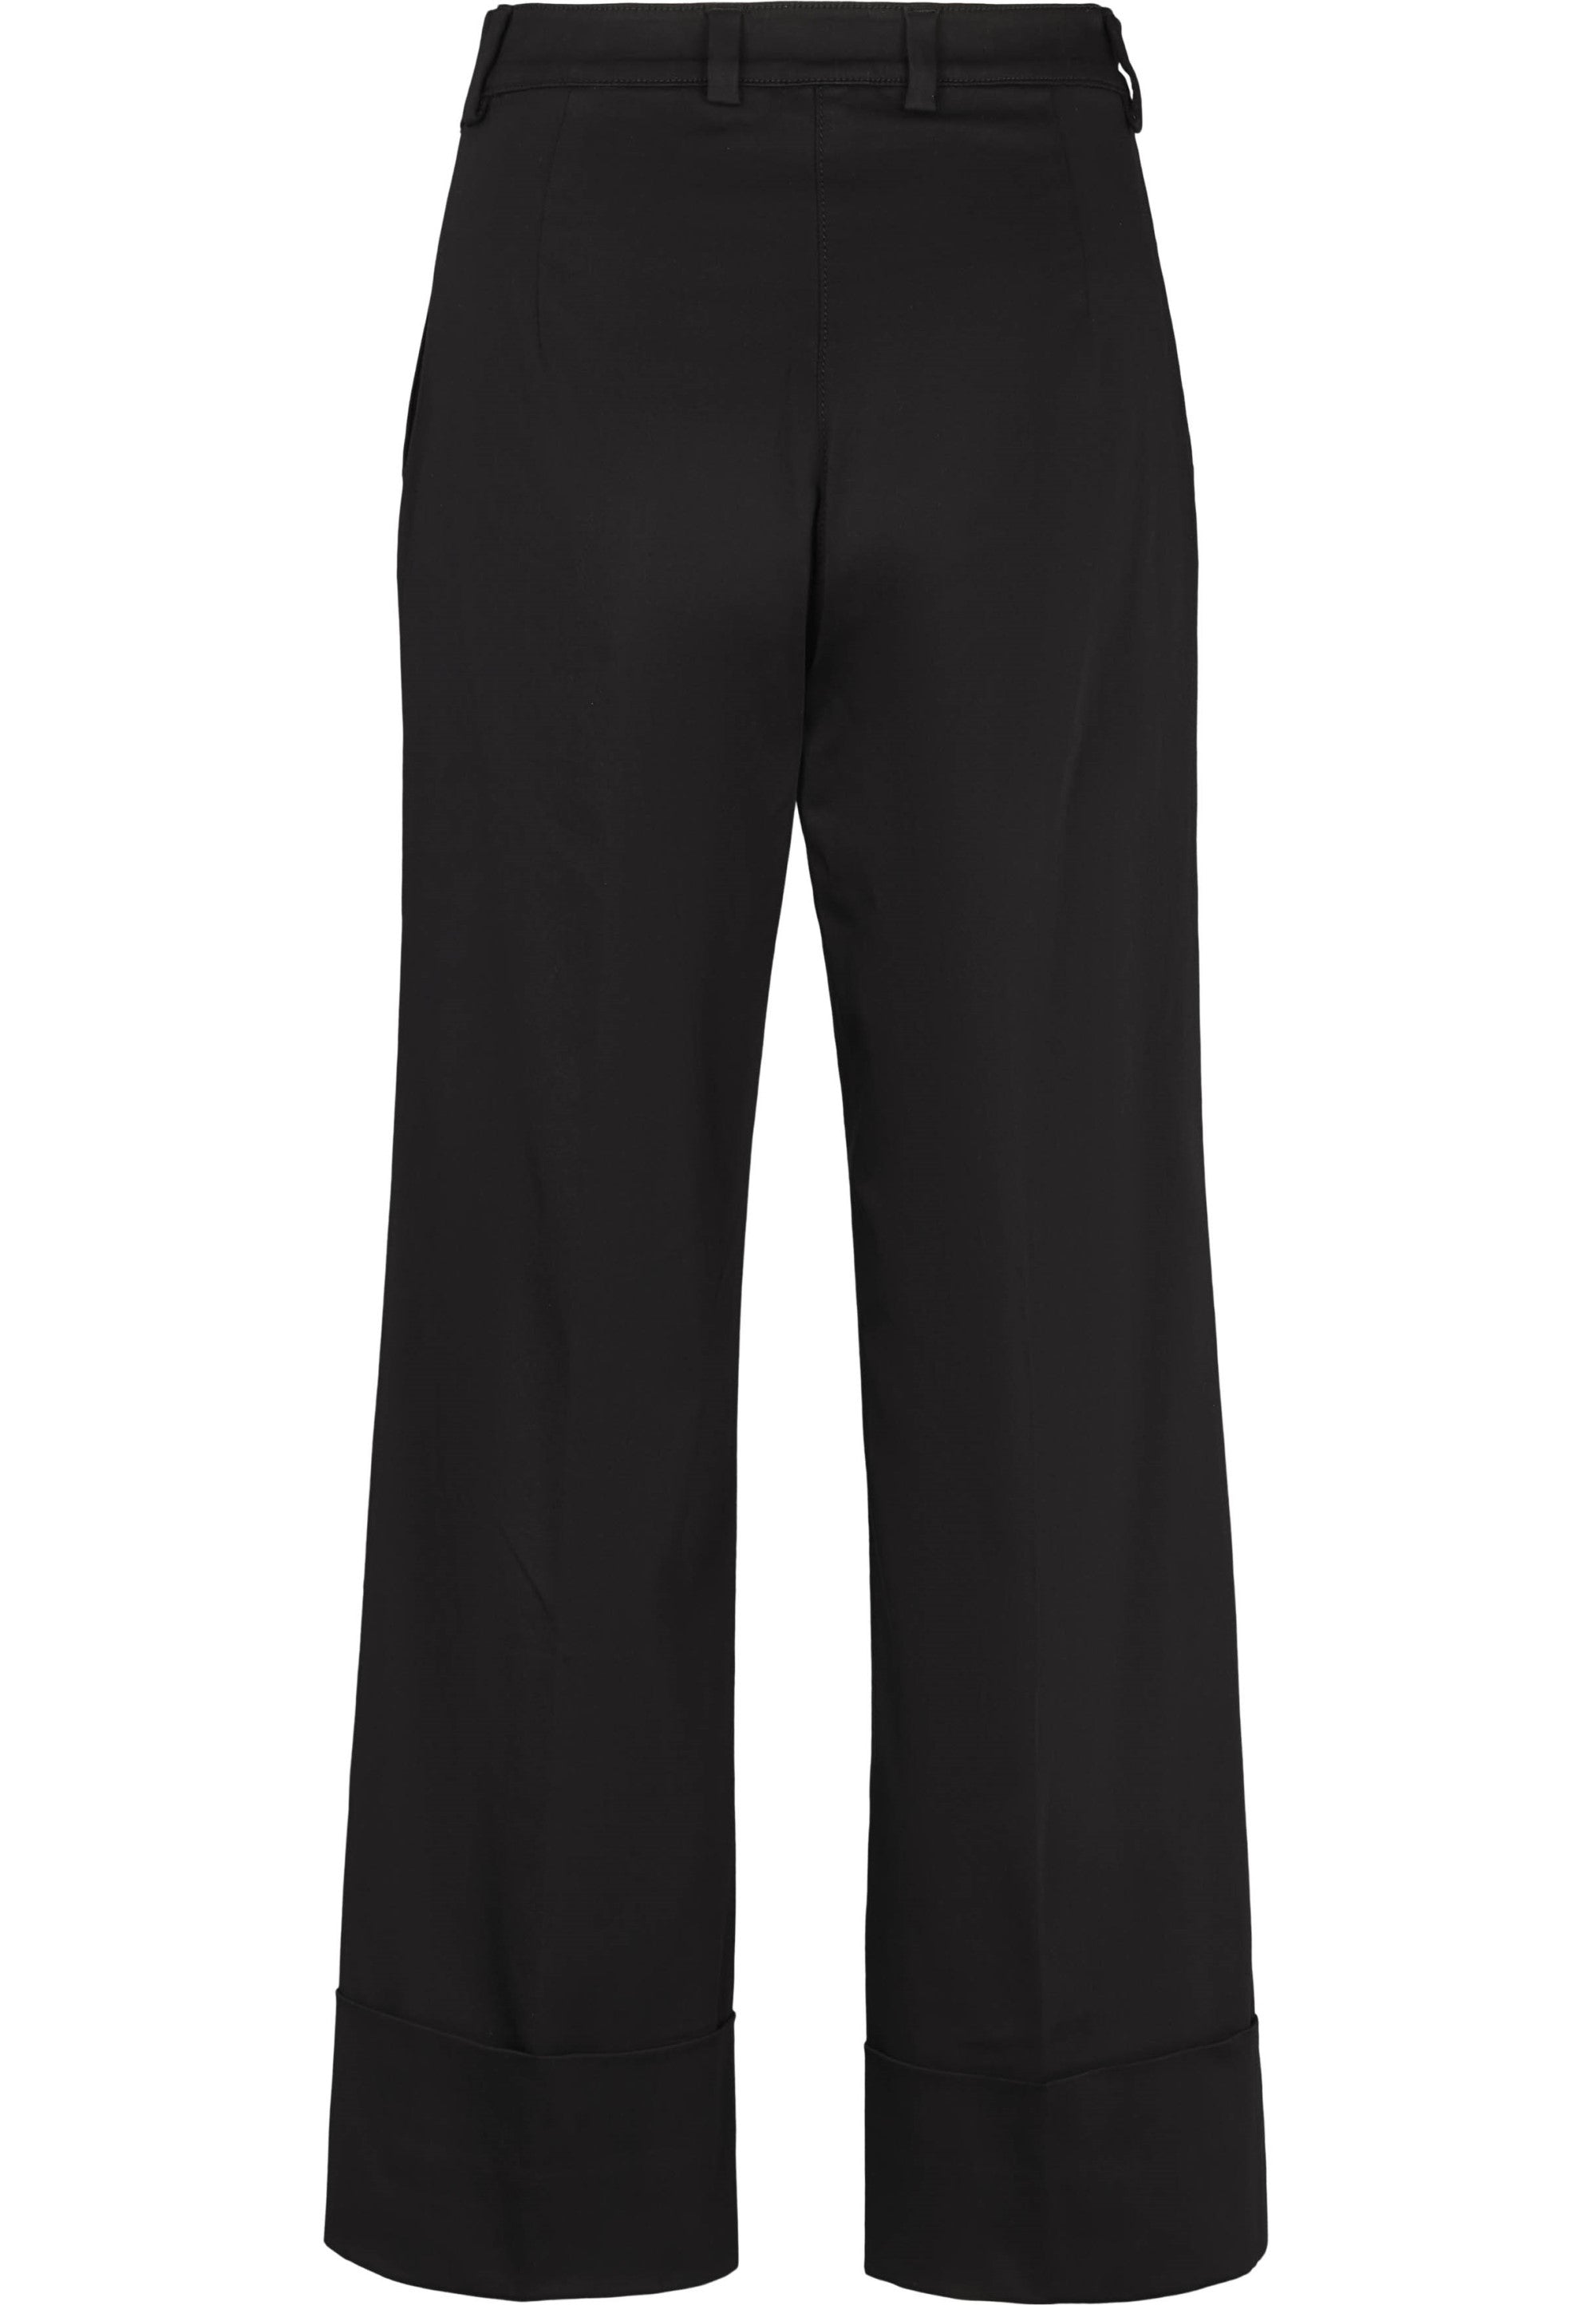 LAURIE Phoebe Turnup Loose Crop Trousers LOOSE 99105 Black